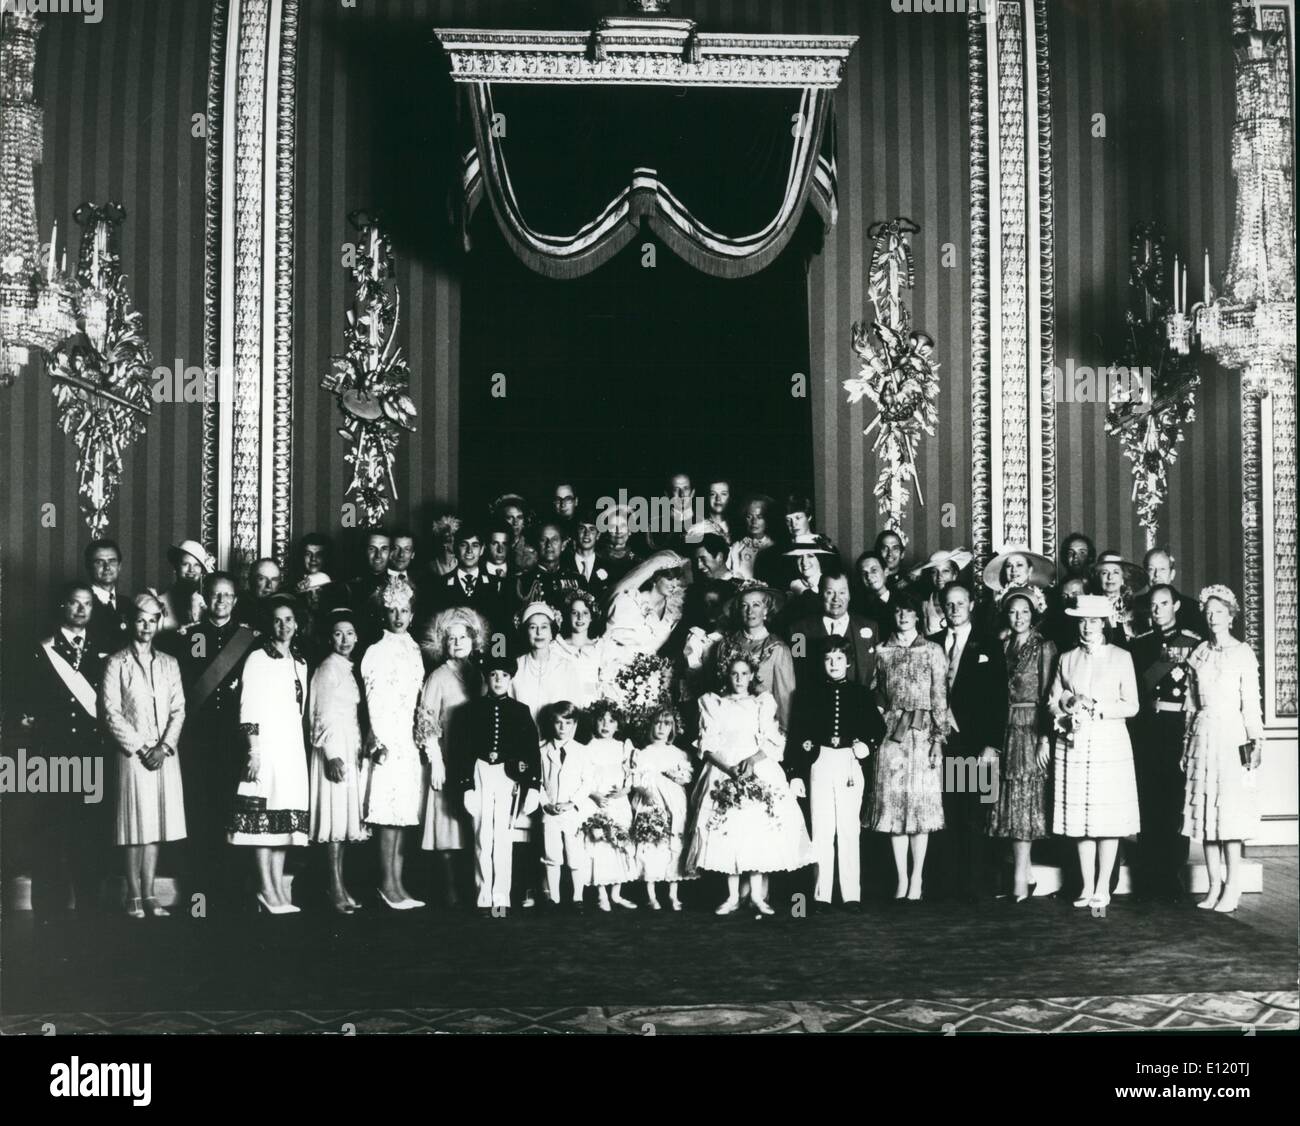 Giugno 06, 1981 - Il Royal Wedding gruppo: il Principe Charles condivide una barzelletta con la sua sposa come essi posano per una fotografia di famiglia nella sala del Trono del Palazzo di Buckingham. Foto Stock